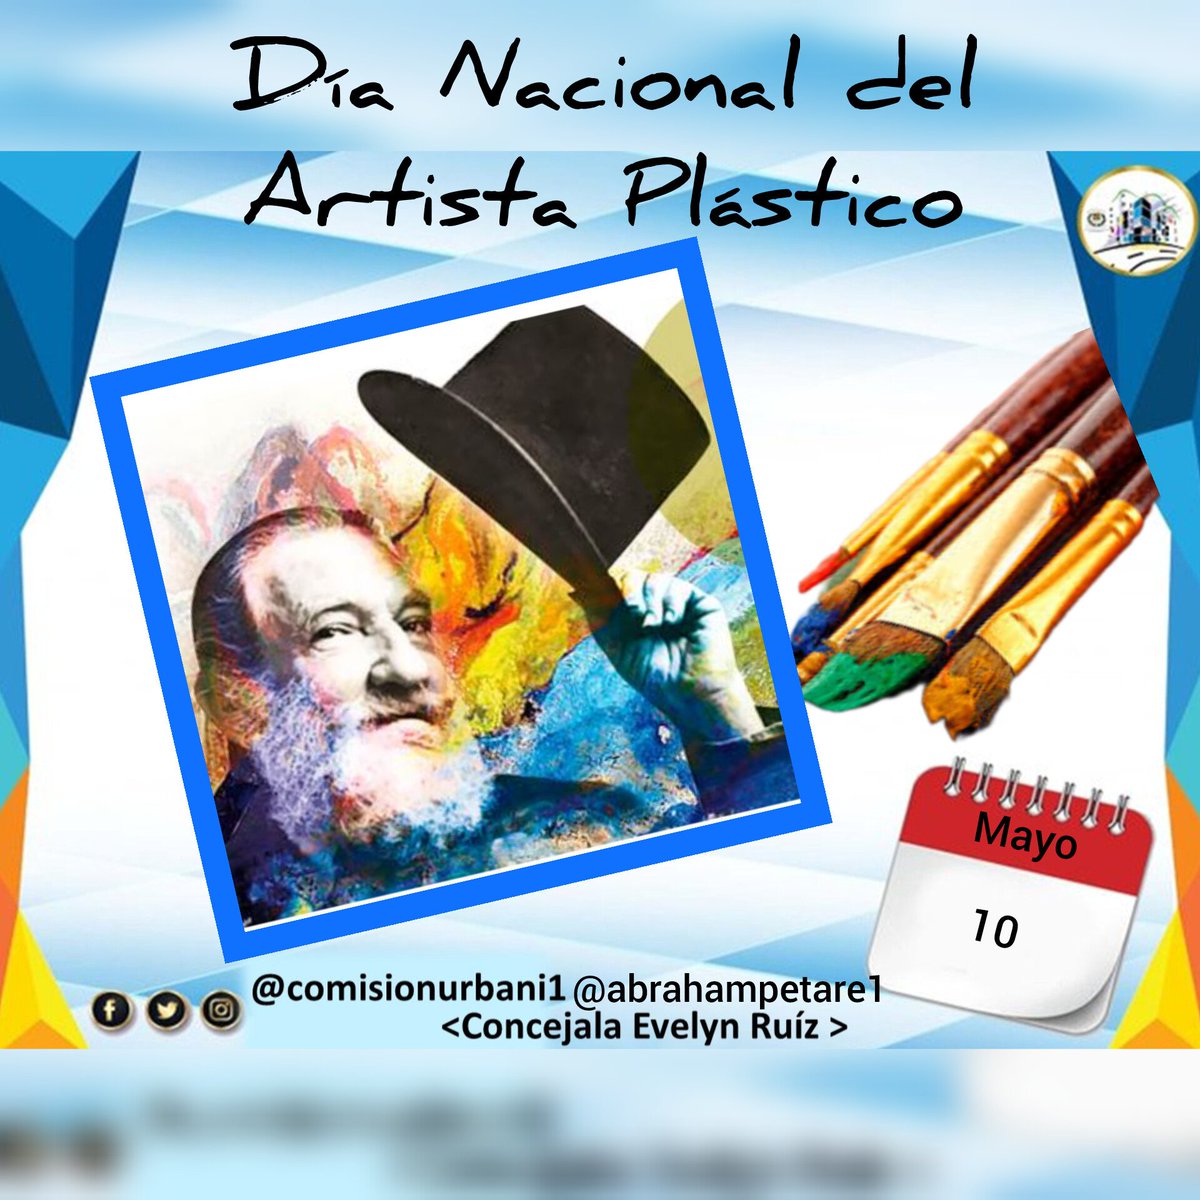 #10May Día Nacional del Artista Plástico. Celebrado desde 1983, en conmemoración al natalicio a Armando Reverón, considerado uno de los mejores artistas del siglo XX. ¡Feliz Día Artistas plásticos del país! #ComisiónDeUrbanismo #VenezuelaFestivalDeAmor